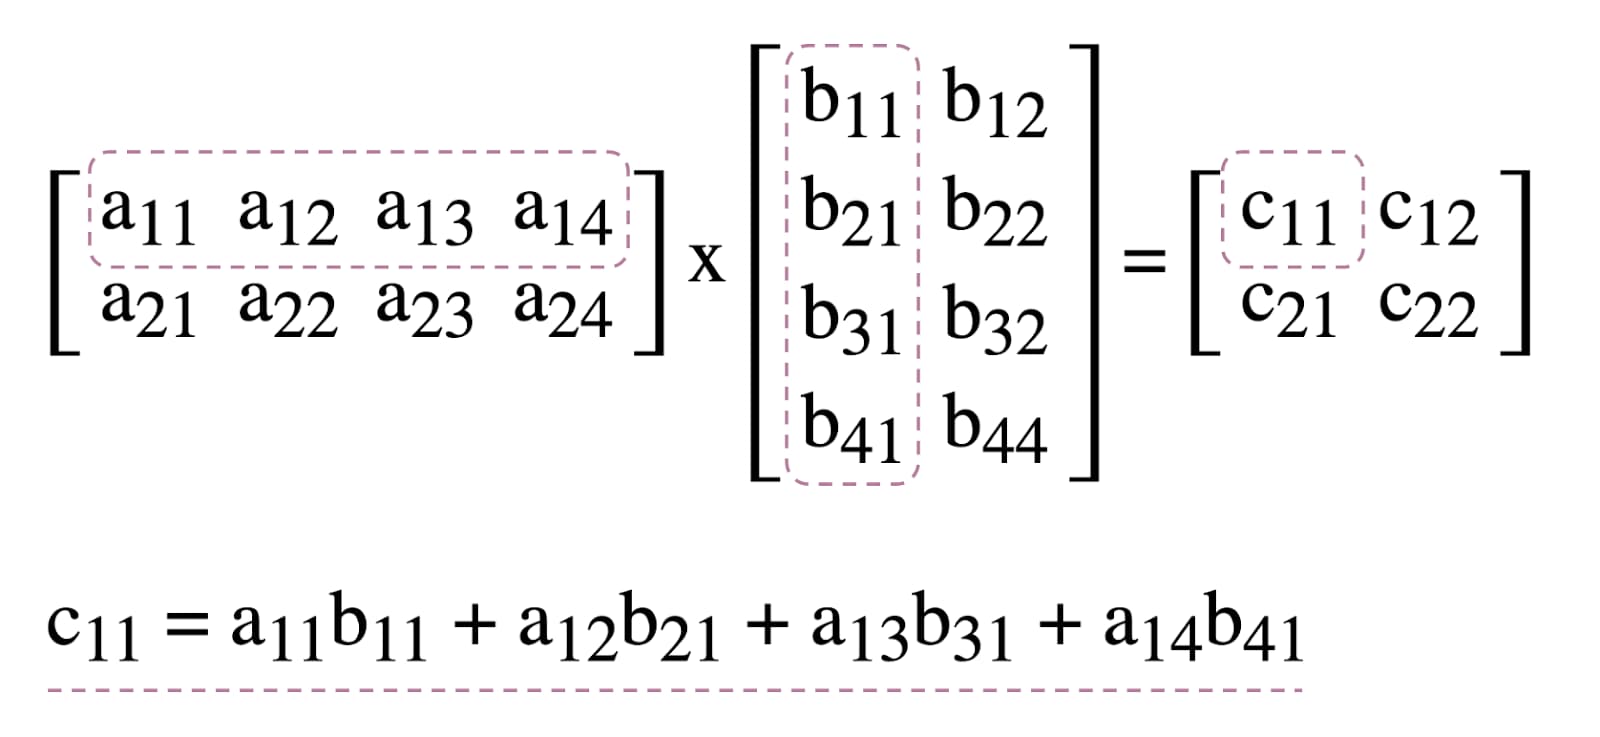 Diagramme de multiplication matricielle